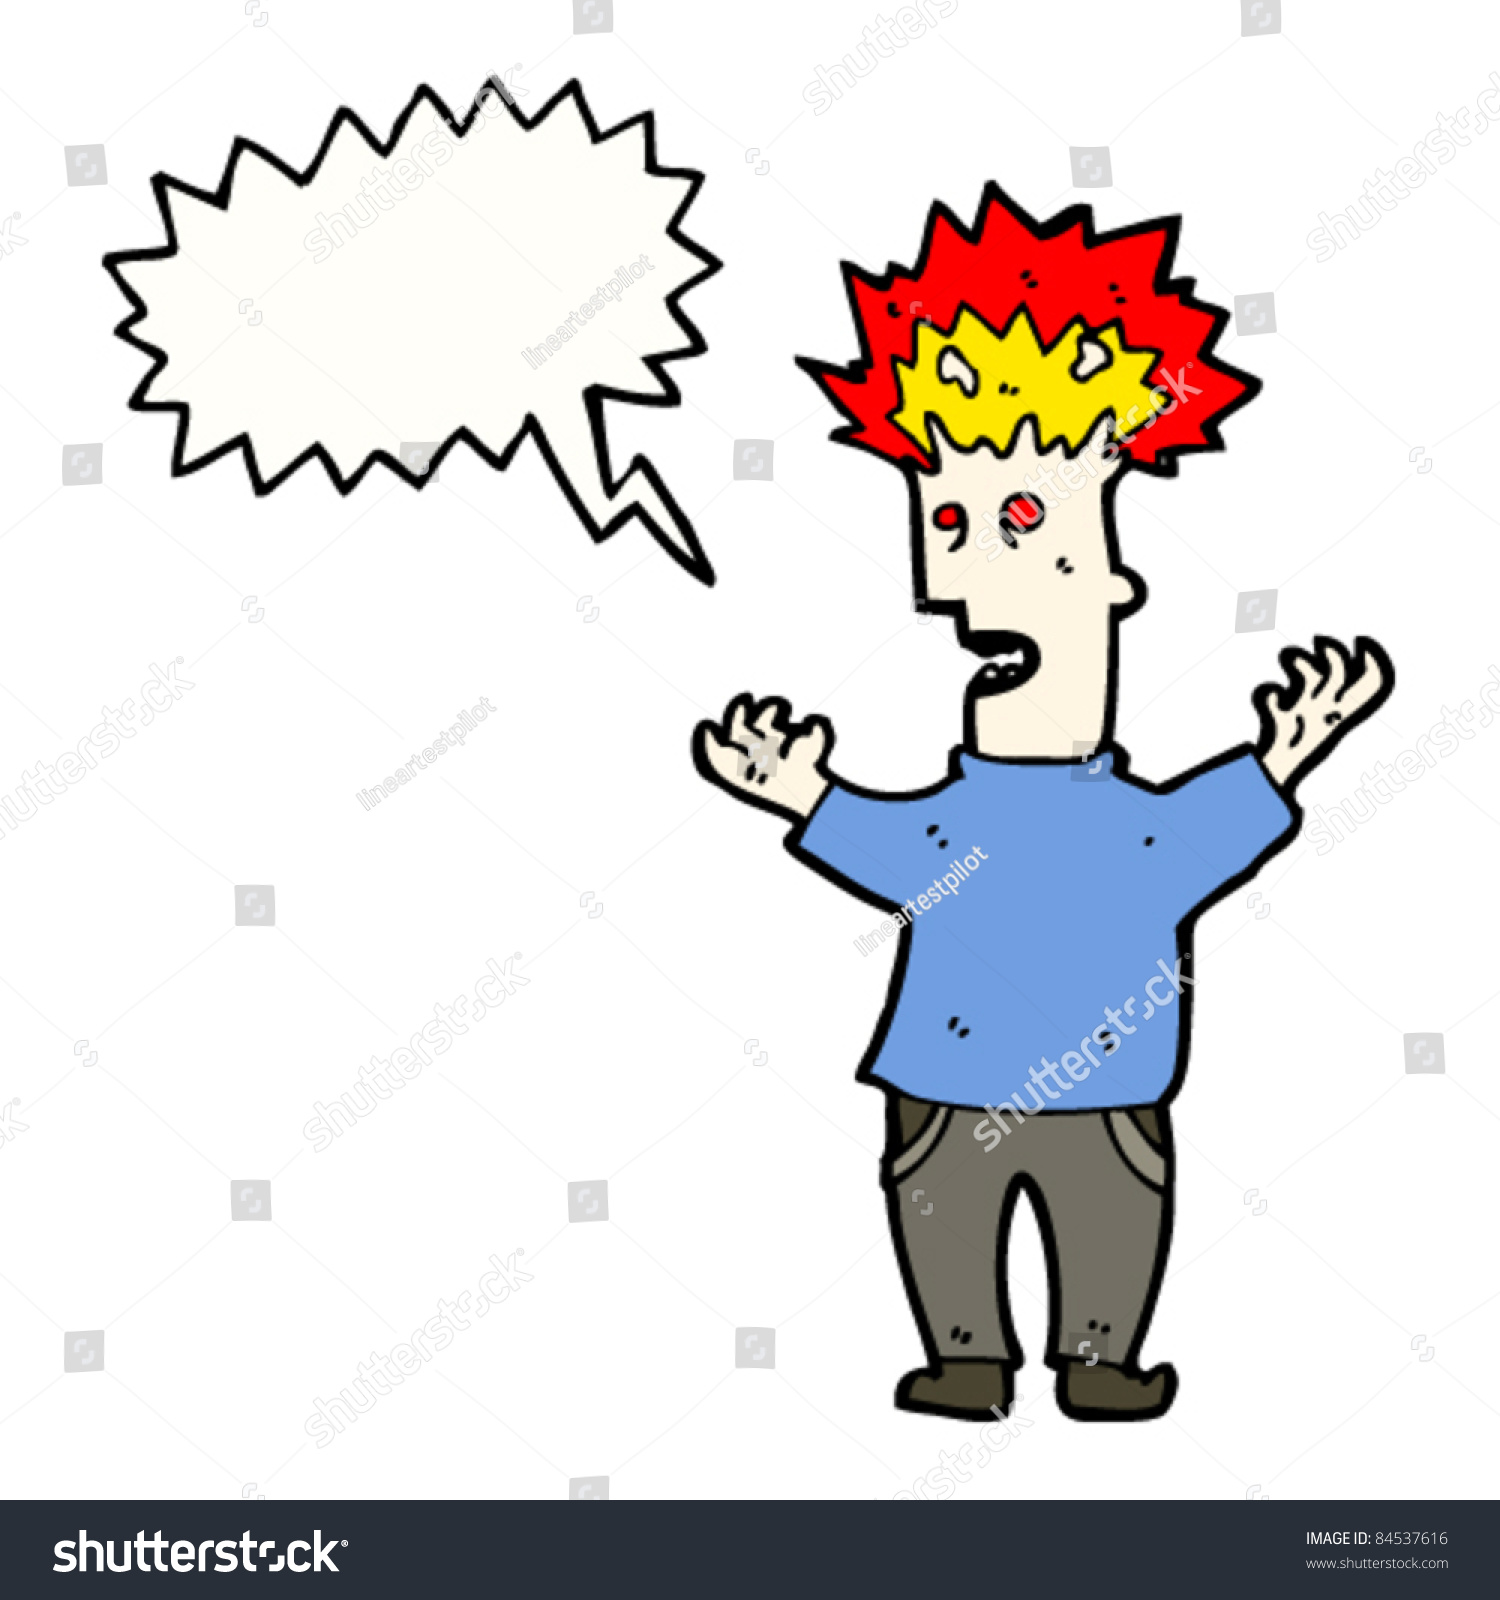 Cartoon Exploding Stress Head Man: стоковая векторная графика (без лицензио...